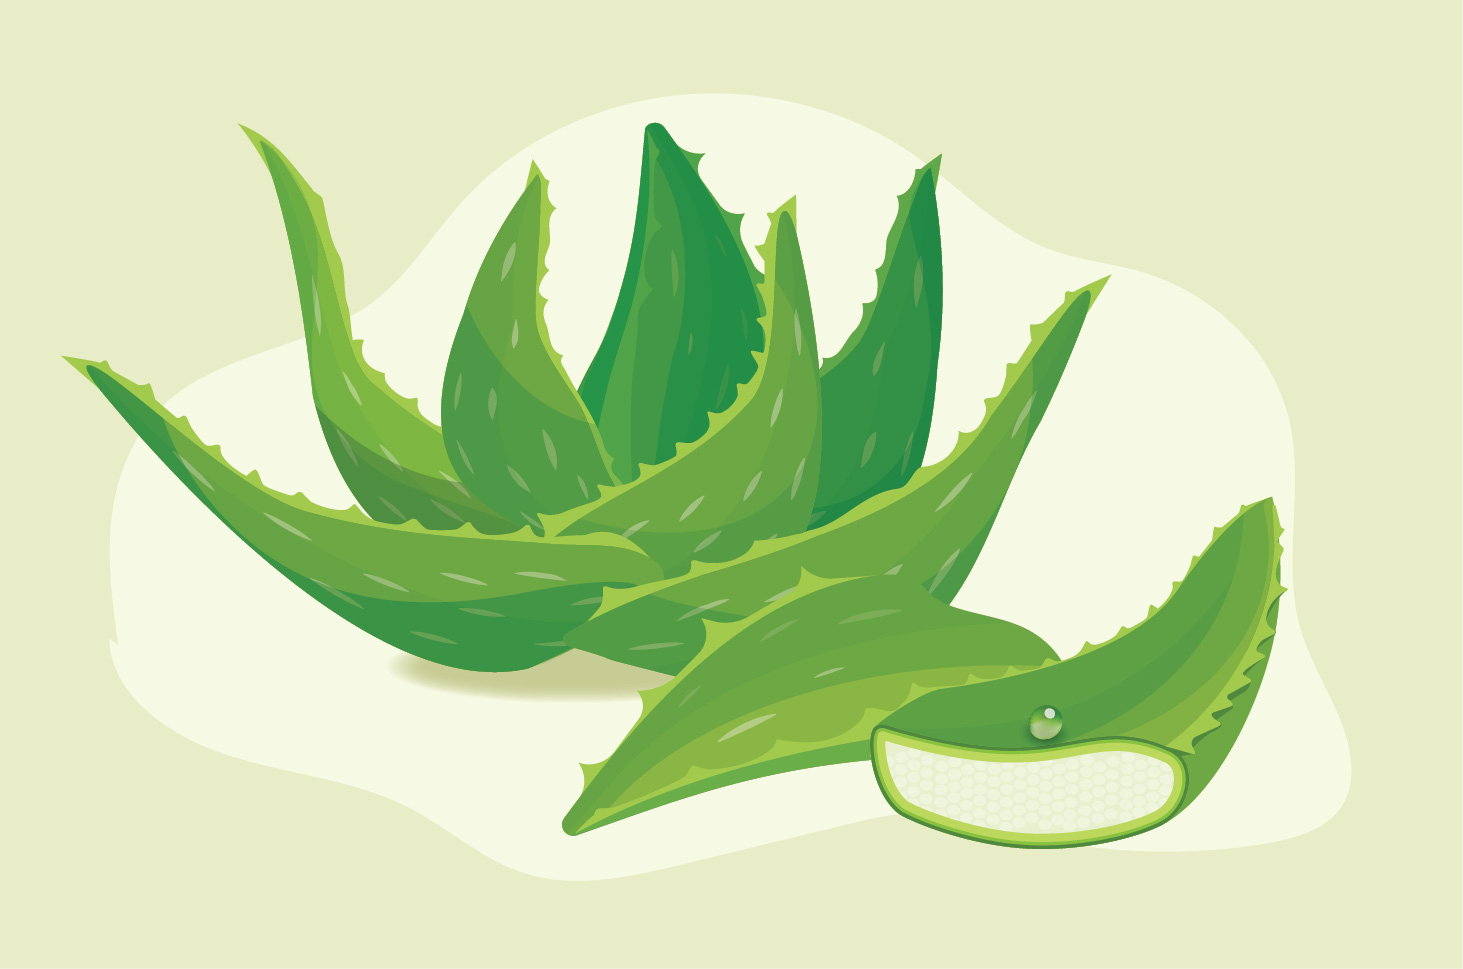 Az aloe vera gyógyír lehet a fog- és ínyfájdalmakra – íme a tények